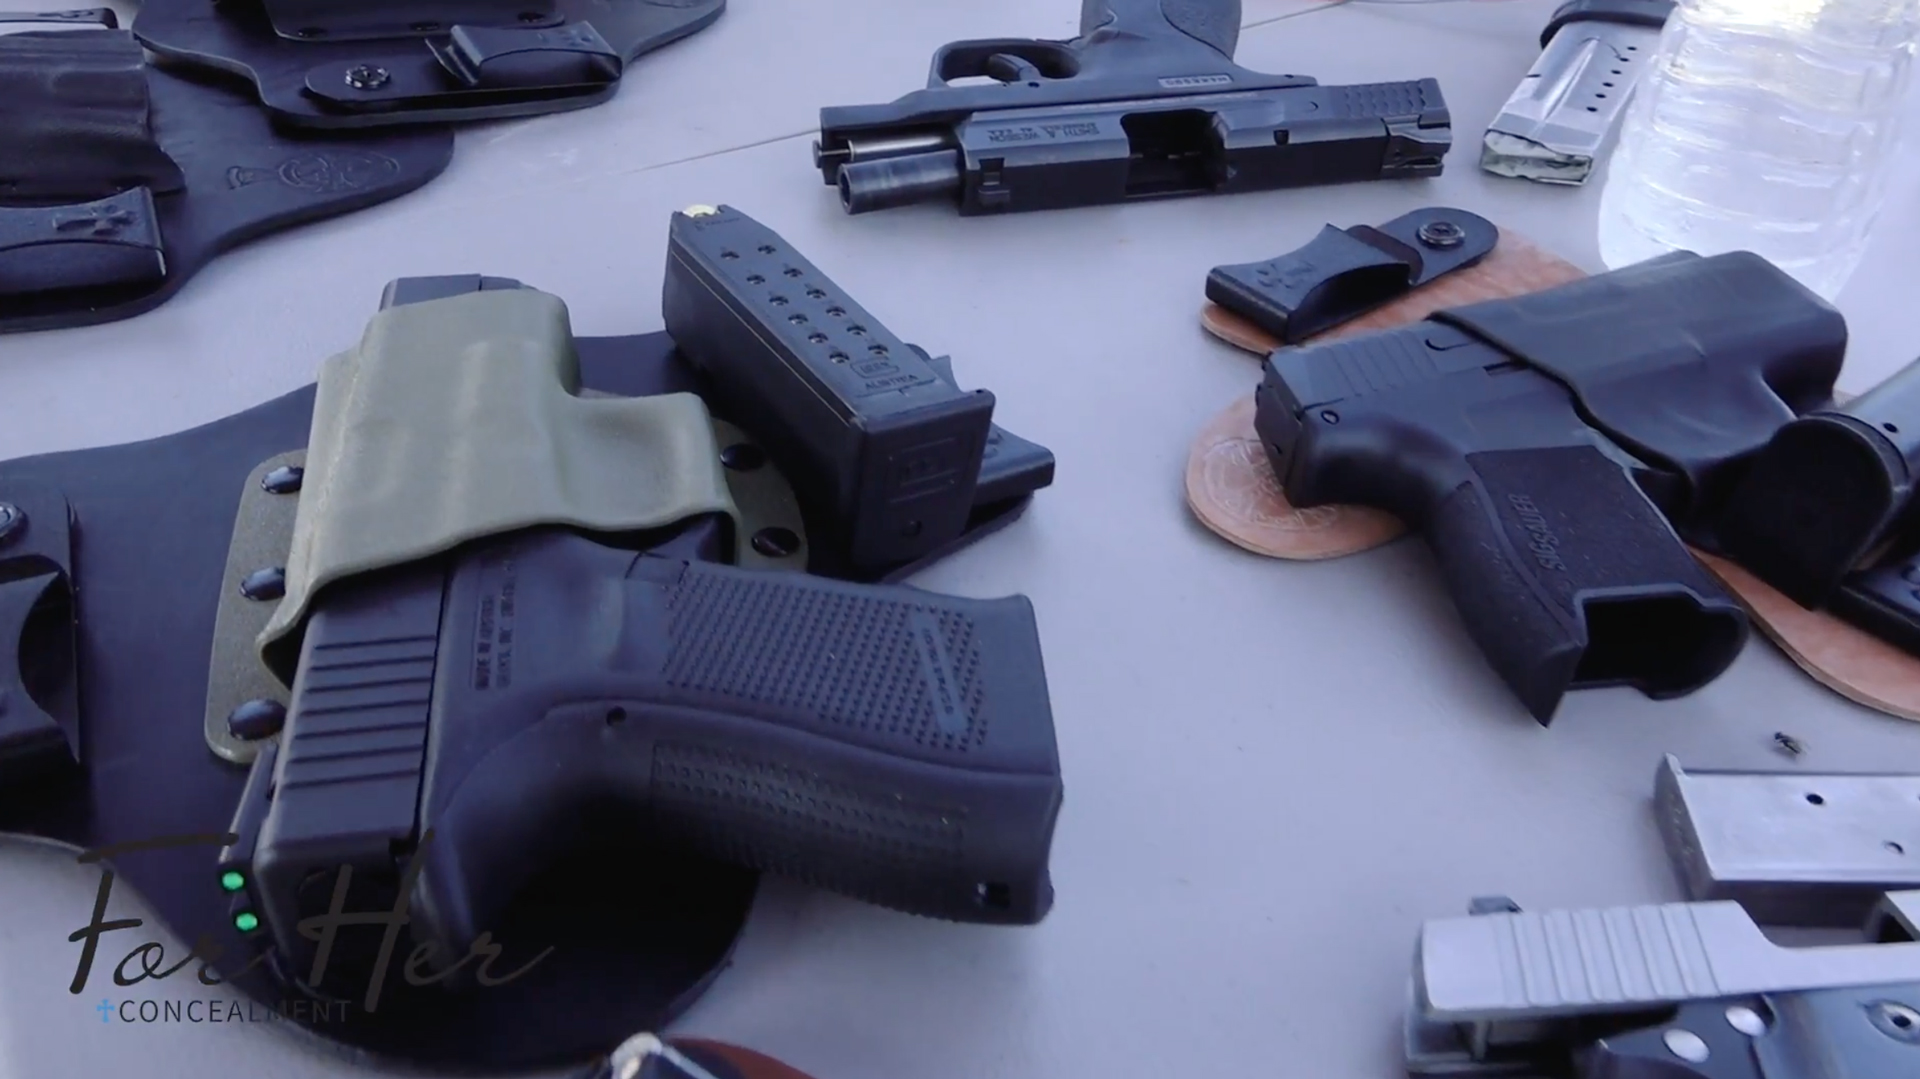 Details about   Concealed Carry Pistol Holster Gun Handgun Firearm Holder Left Right Neoprene 